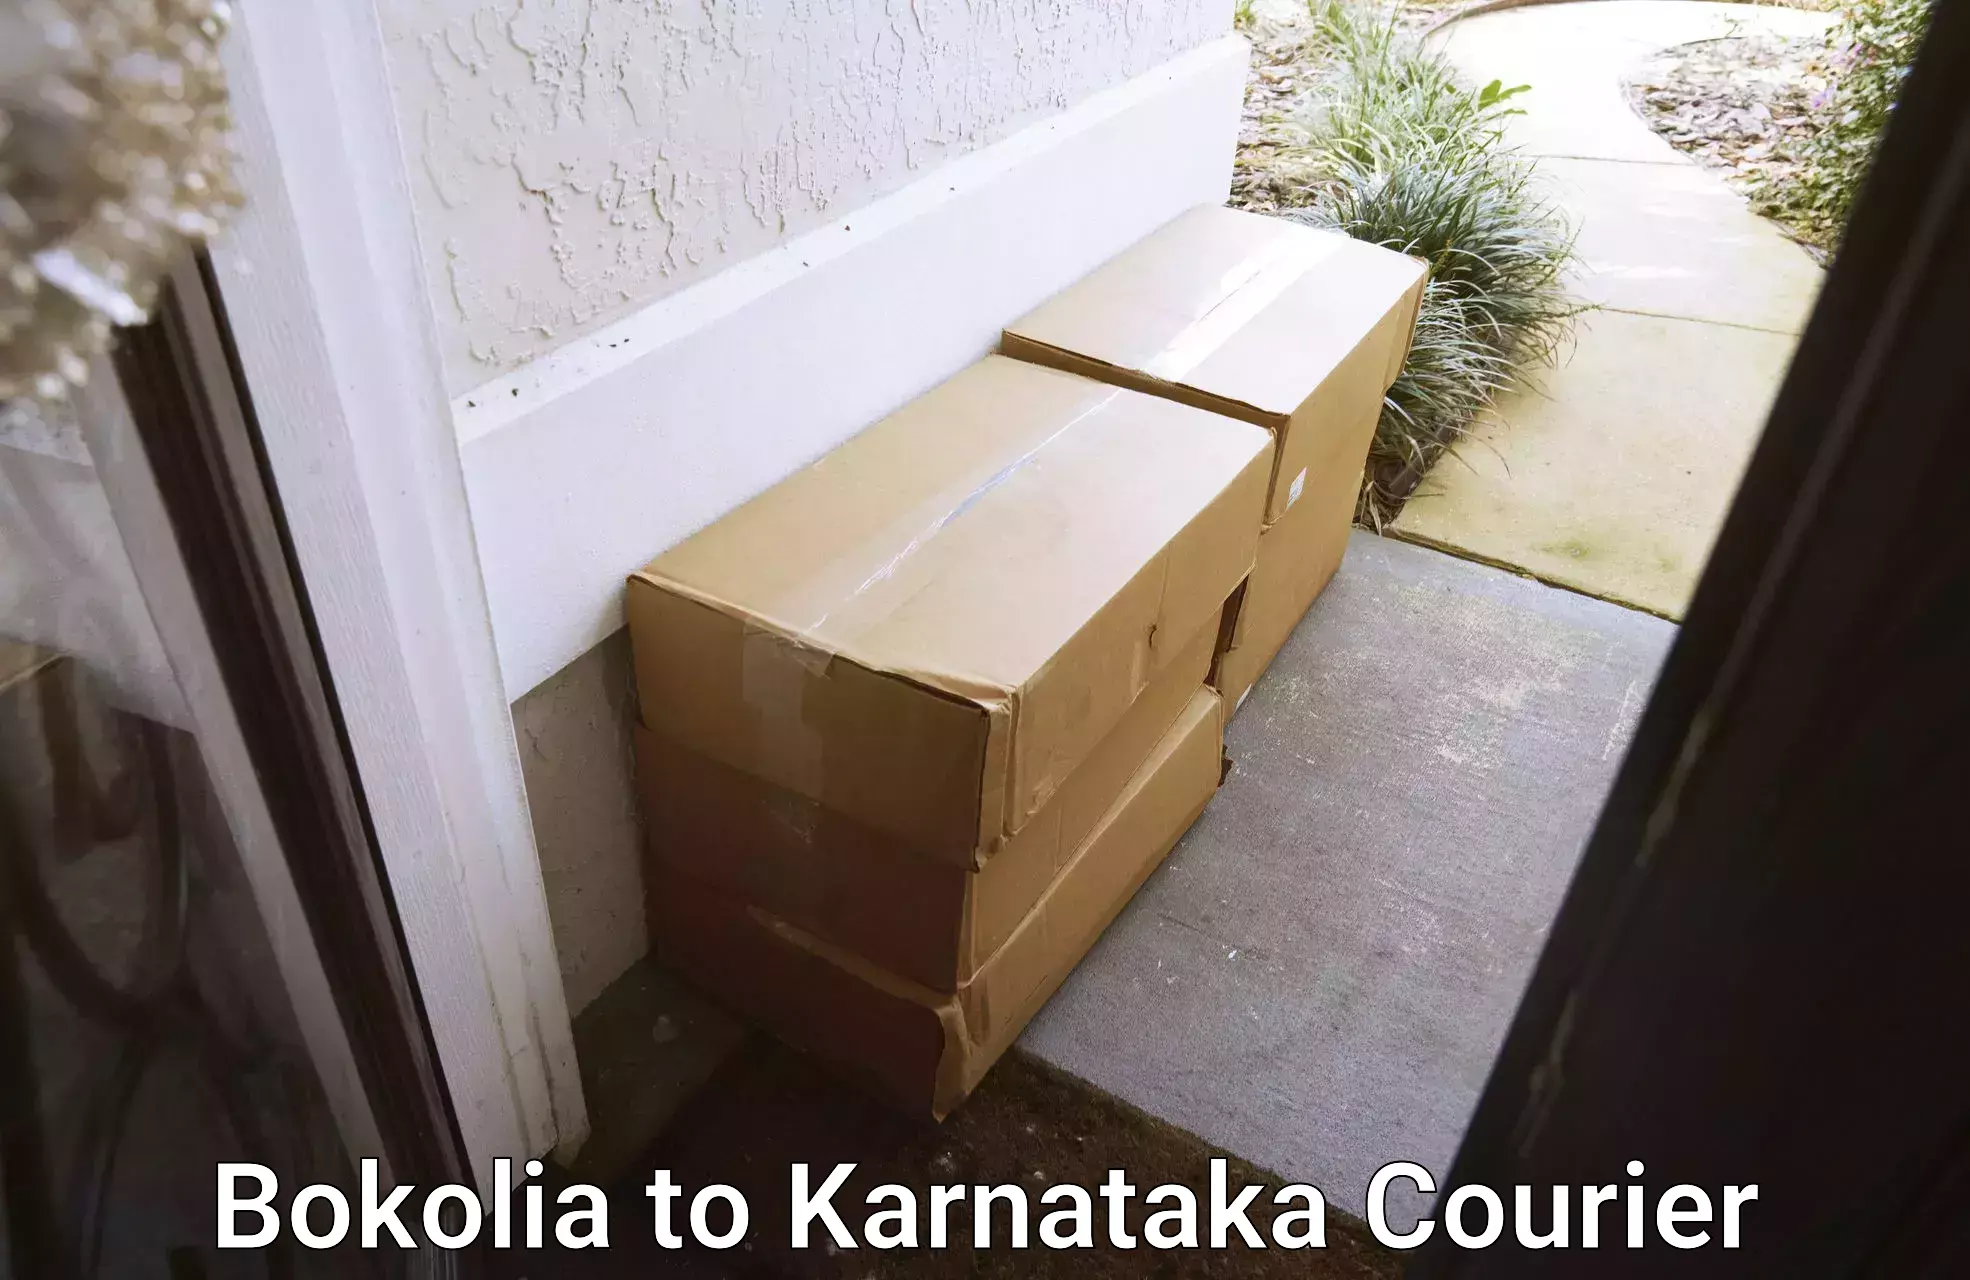 Express package handling Bokolia to Karnataka